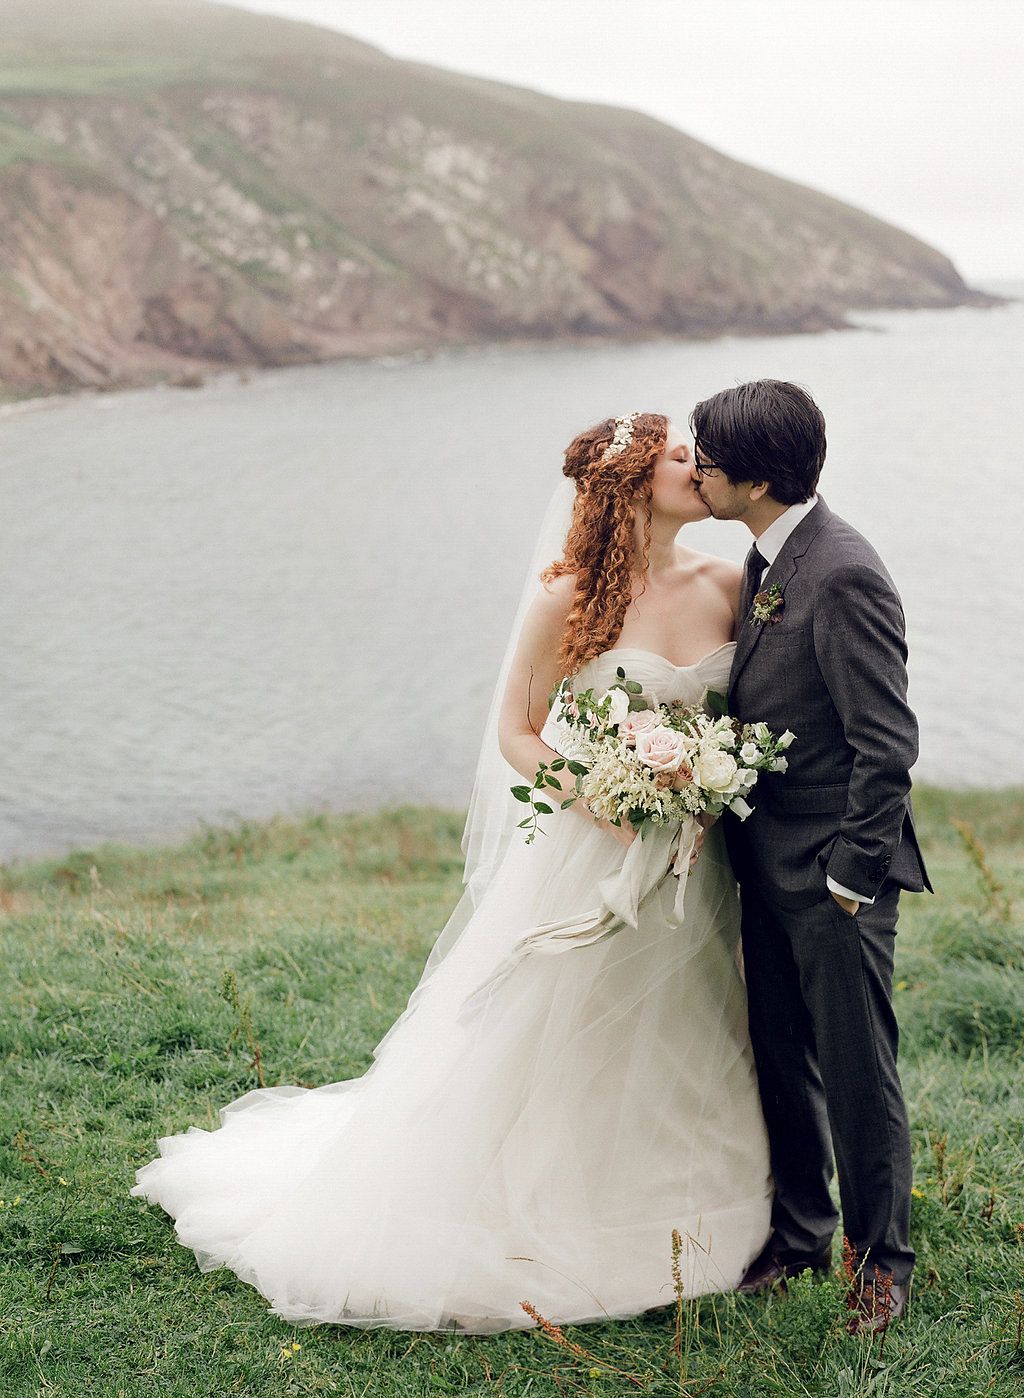 Weddings | Pure Romance: An Ireland Elopement